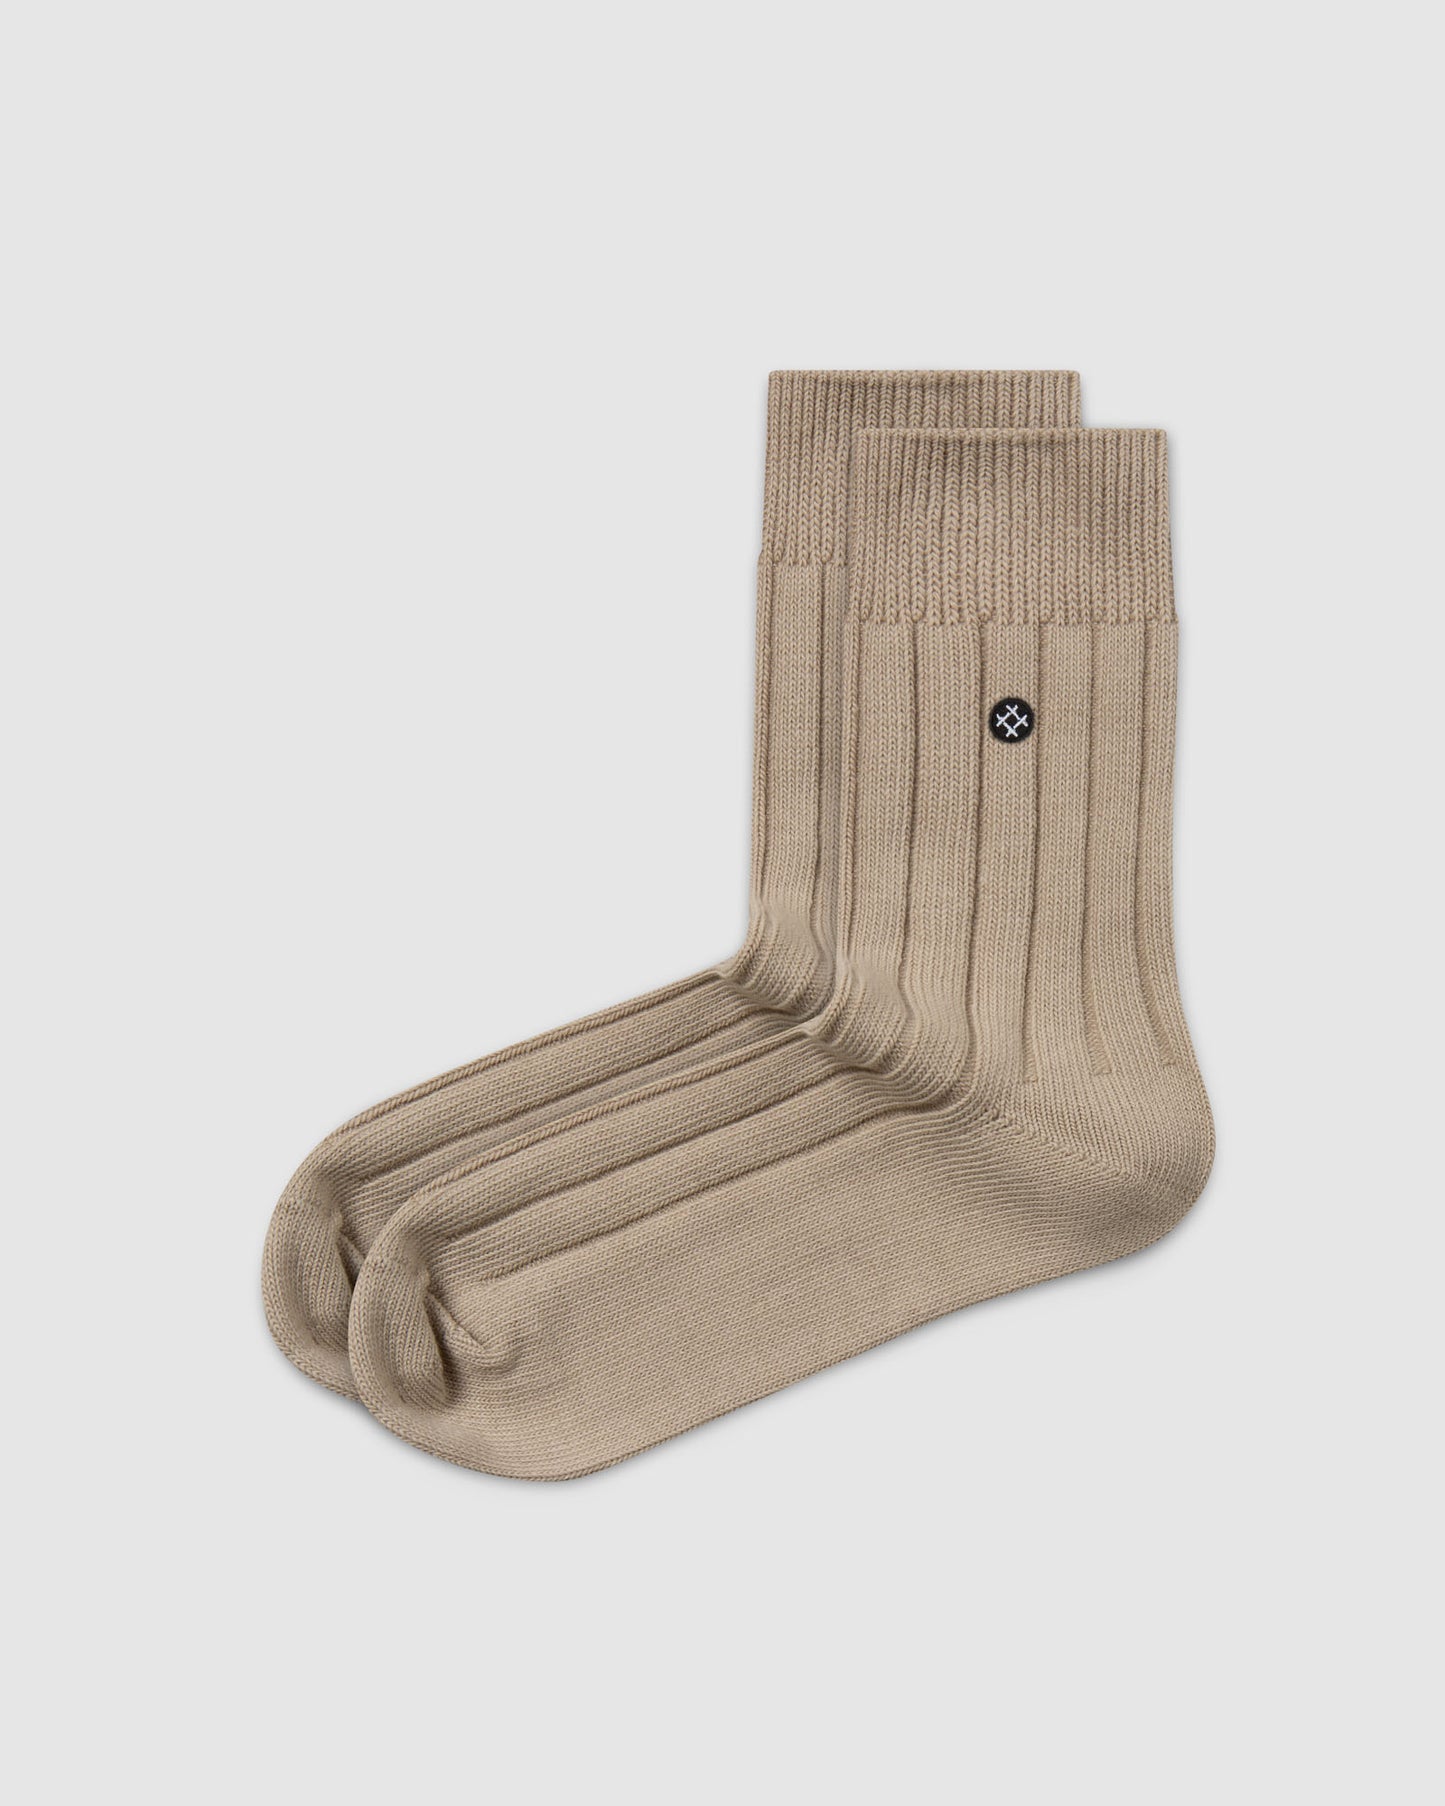 Acorns 6 Pack Quarter Socks